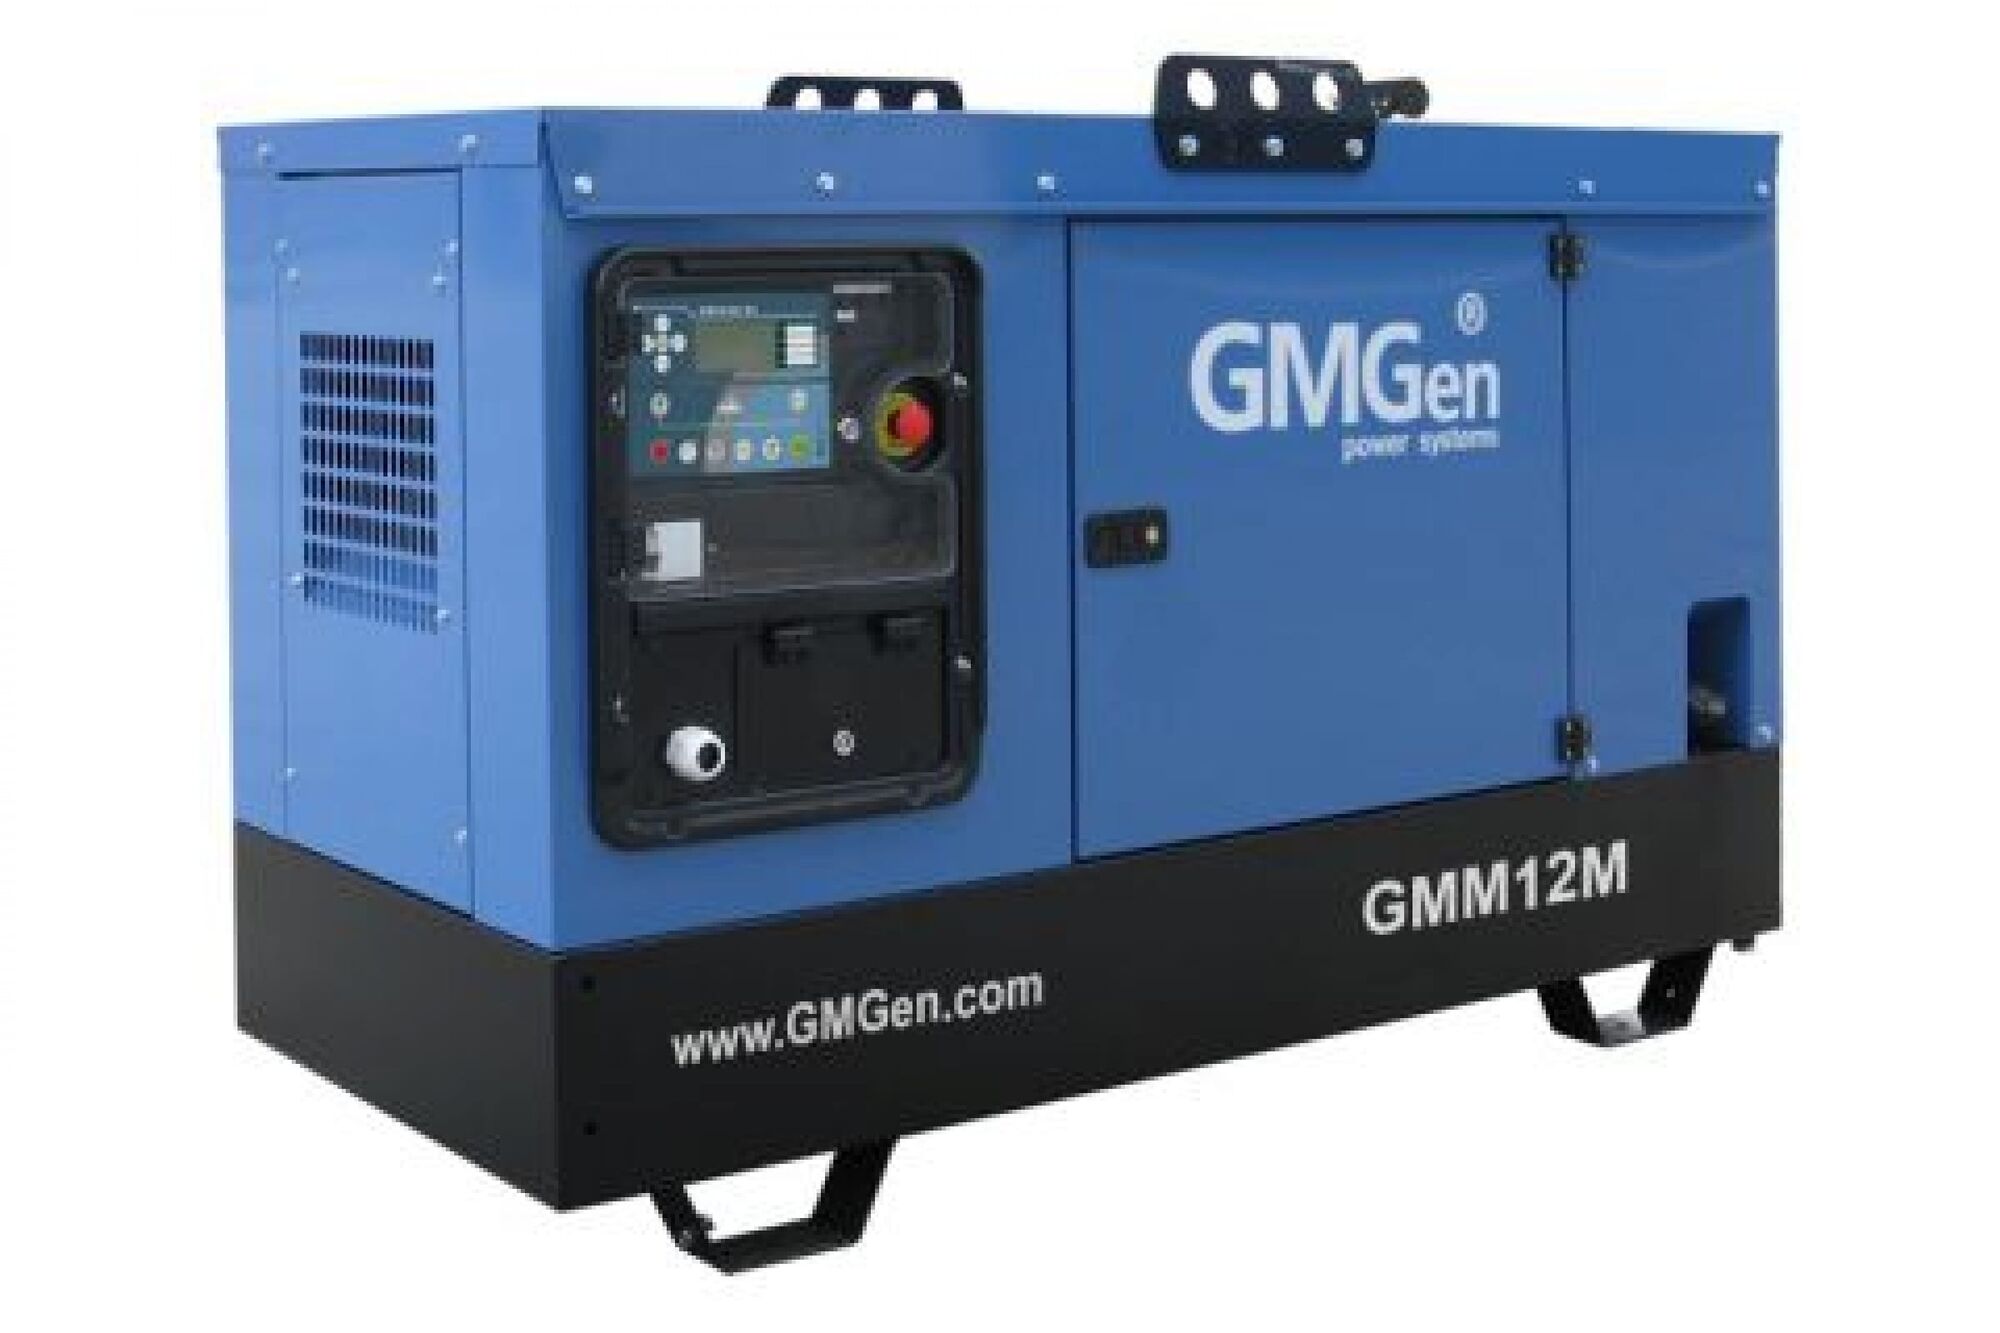 Дизель генератор GMGen Power Systems GMM12M 14 кВт, 220 В в шумозащитном кожухе 502581